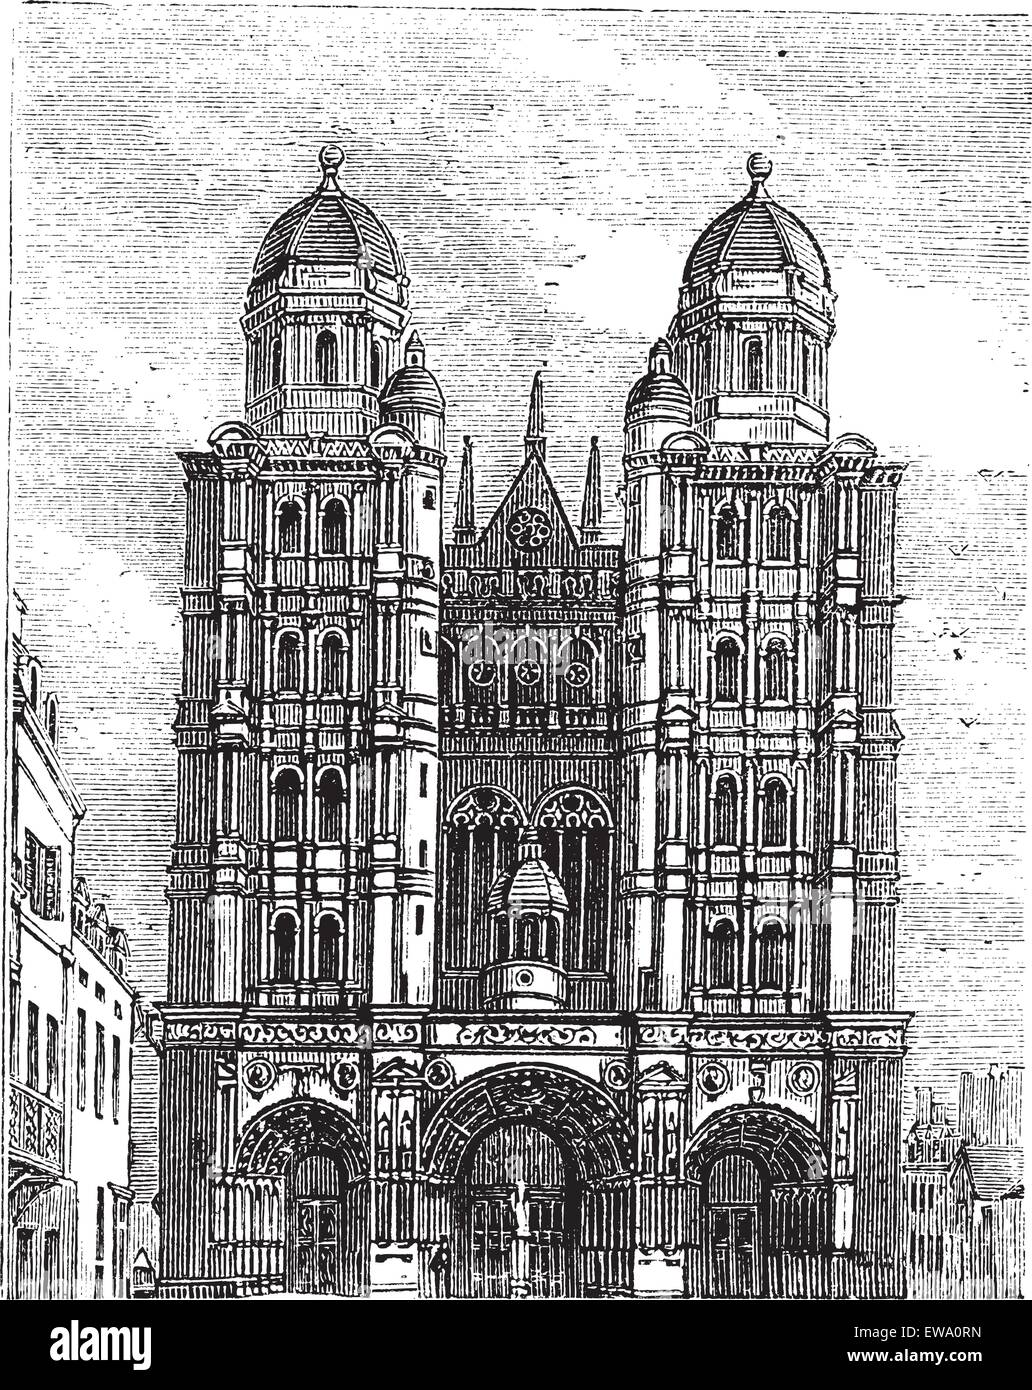 Cathédrale de Dijon en Bourgogne, France, pendant les années 1890, gravure d'époque. Vieille illustration gravée de la Cathédrale de Dijon. Illustration de Vecteur